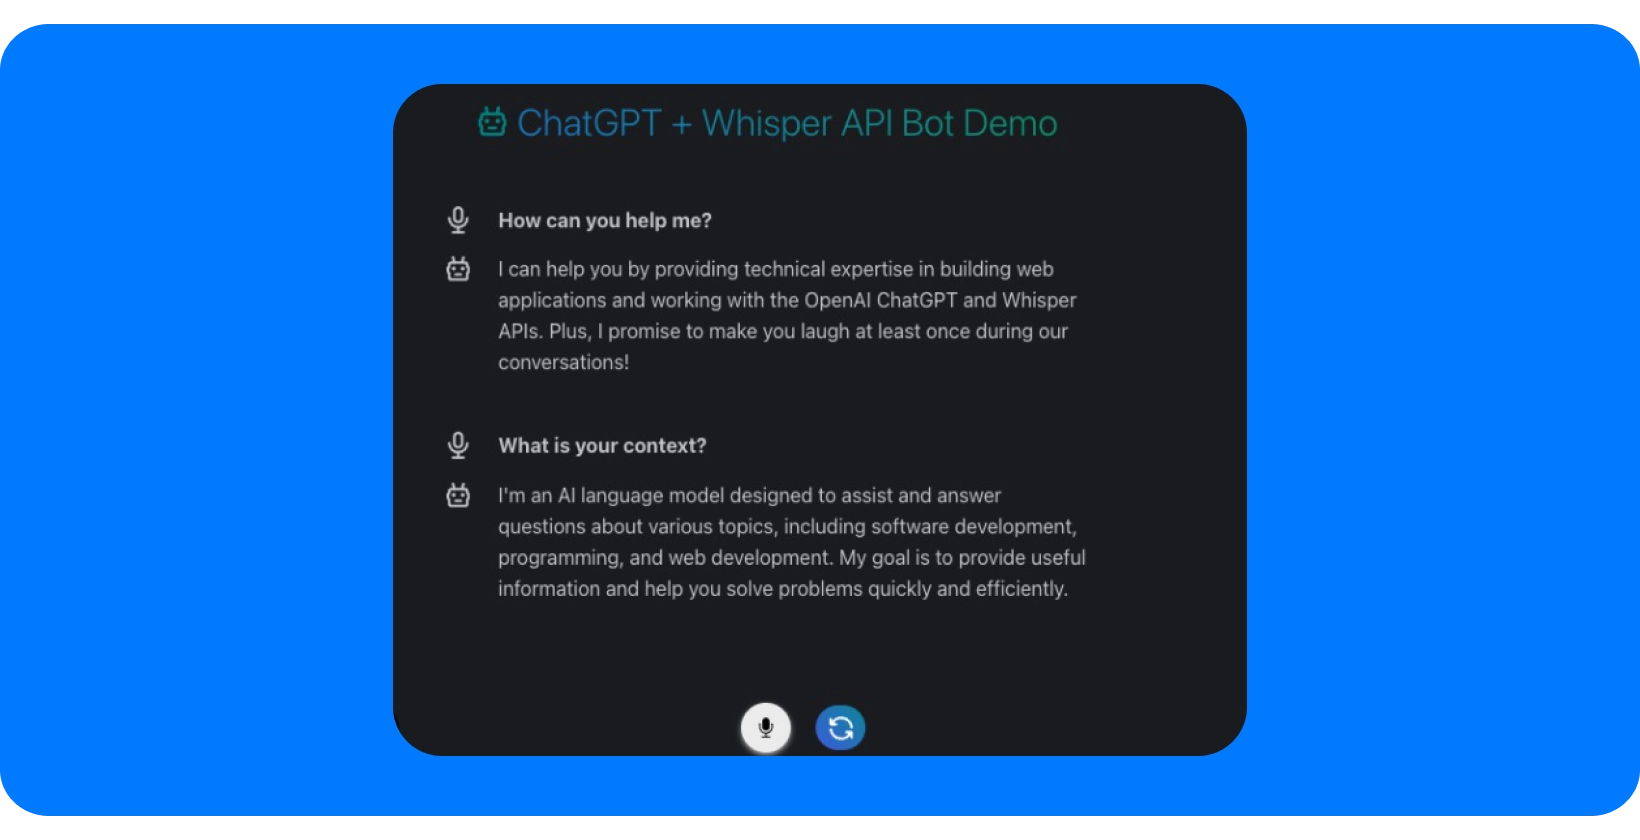 Snimka zaslona ChatGPT + Whisper API Bot Demo s mogućnostima pomoći u razgovoru.